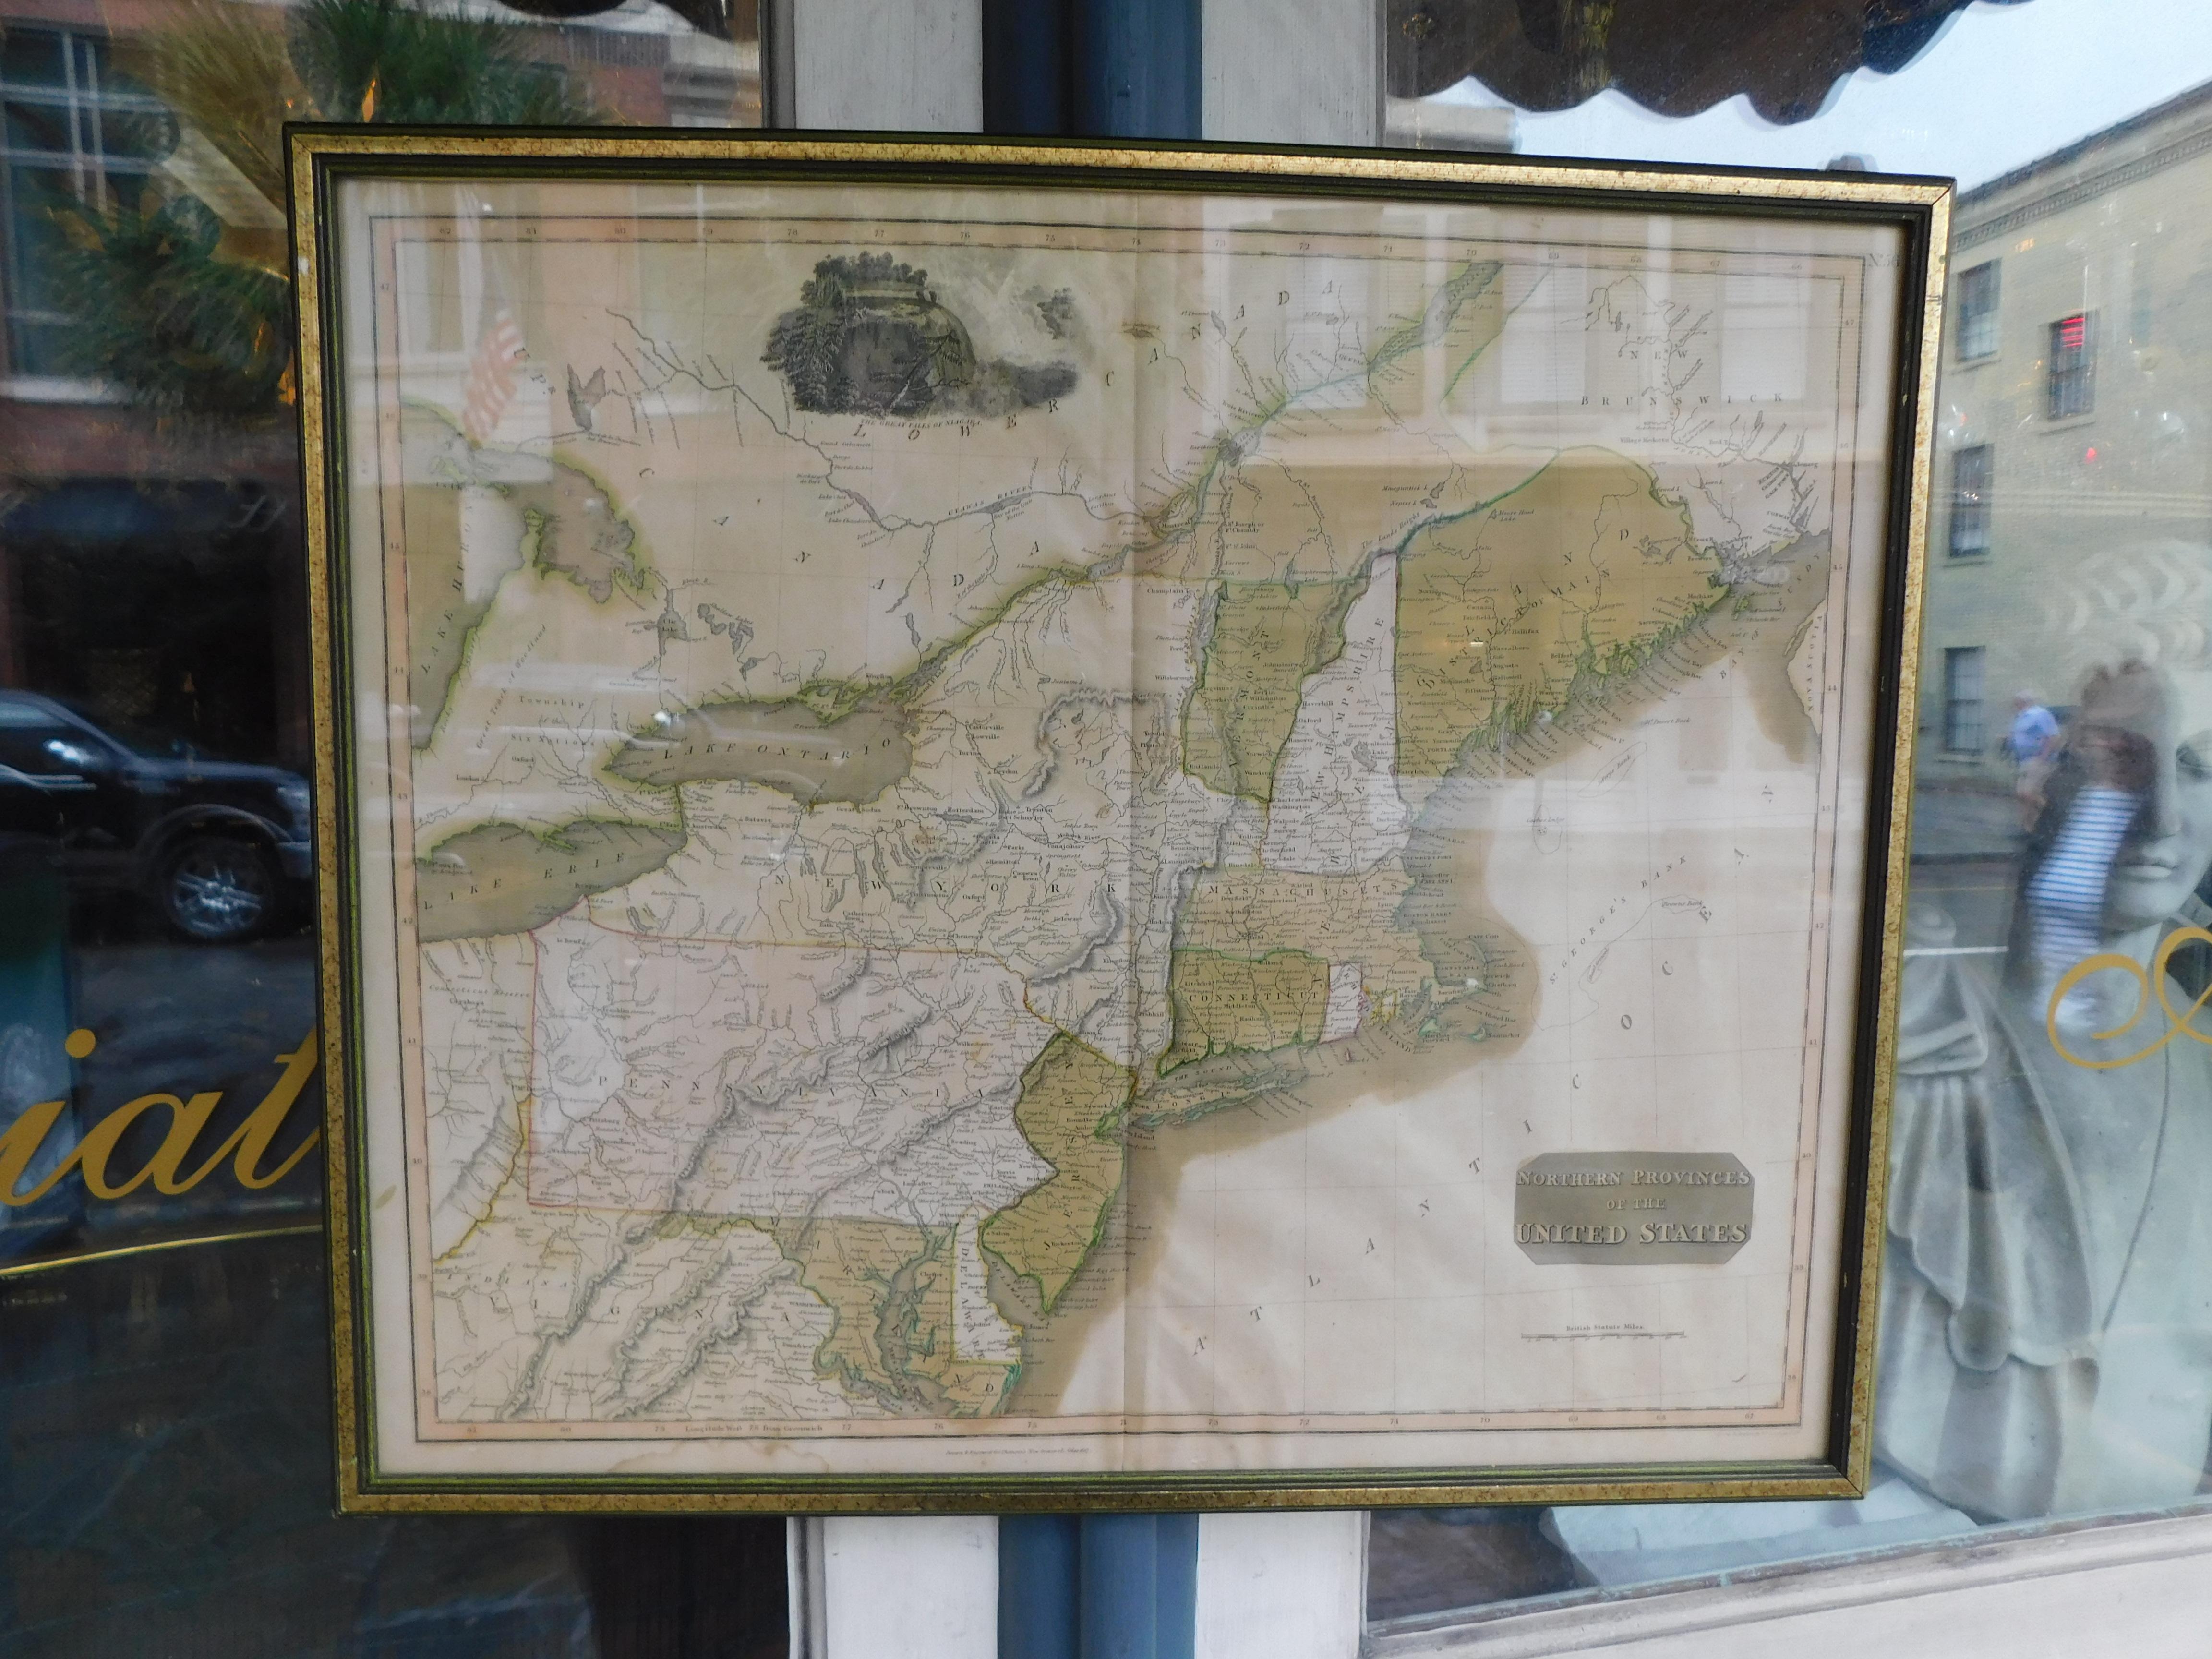 Carte anglaise du nord-est des États-Unis gravée sur cuivre et coloriée à la main, présentée sous verre dans un cadre doré, début du XIXe siècle. Dessiné et gravé pour le nouvel atlas général de Thomson, 1817.